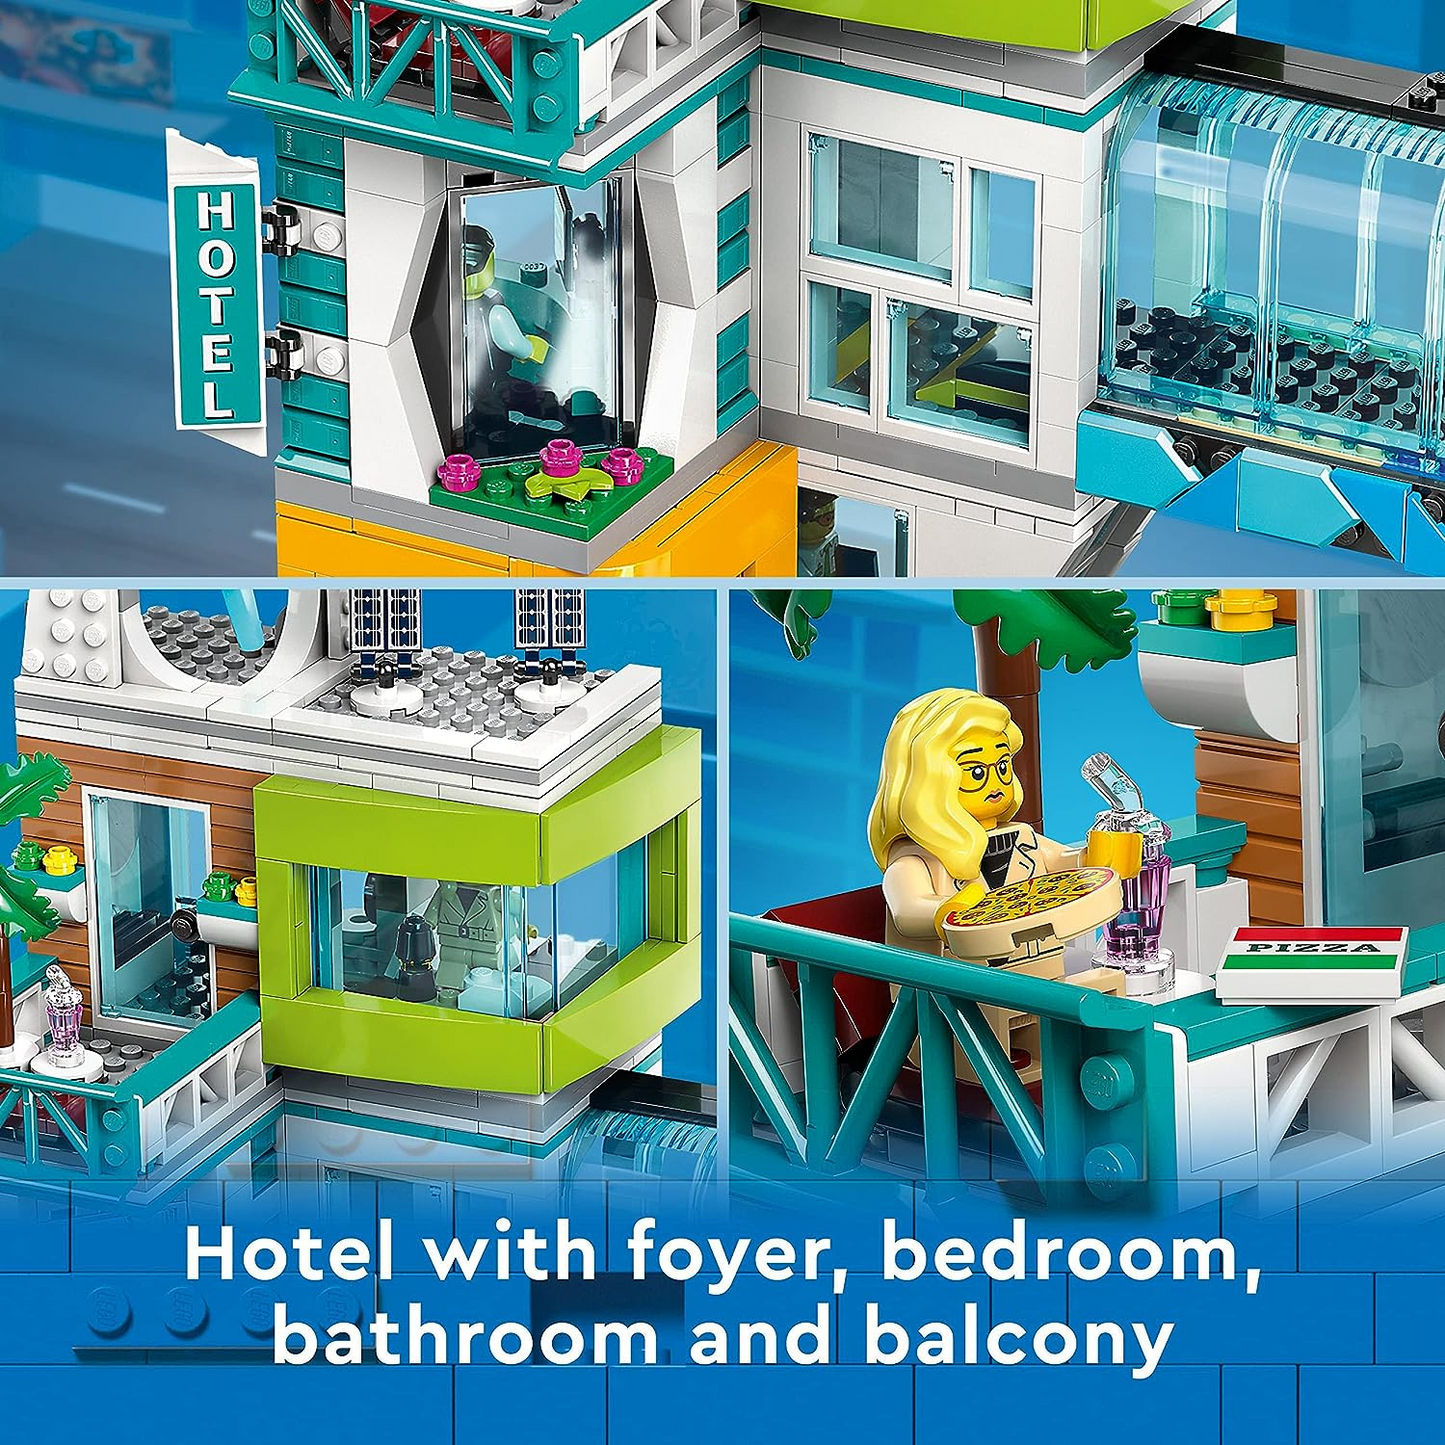 LEGO 60380 Conjunto City Center, kit de construção de modelo com salas modulares reconfiguráveis, incluindo lojas de brinquedos, barbeiro, estúdio Vlogger, hotel e discoteca na cobertura com 14 minifiguras